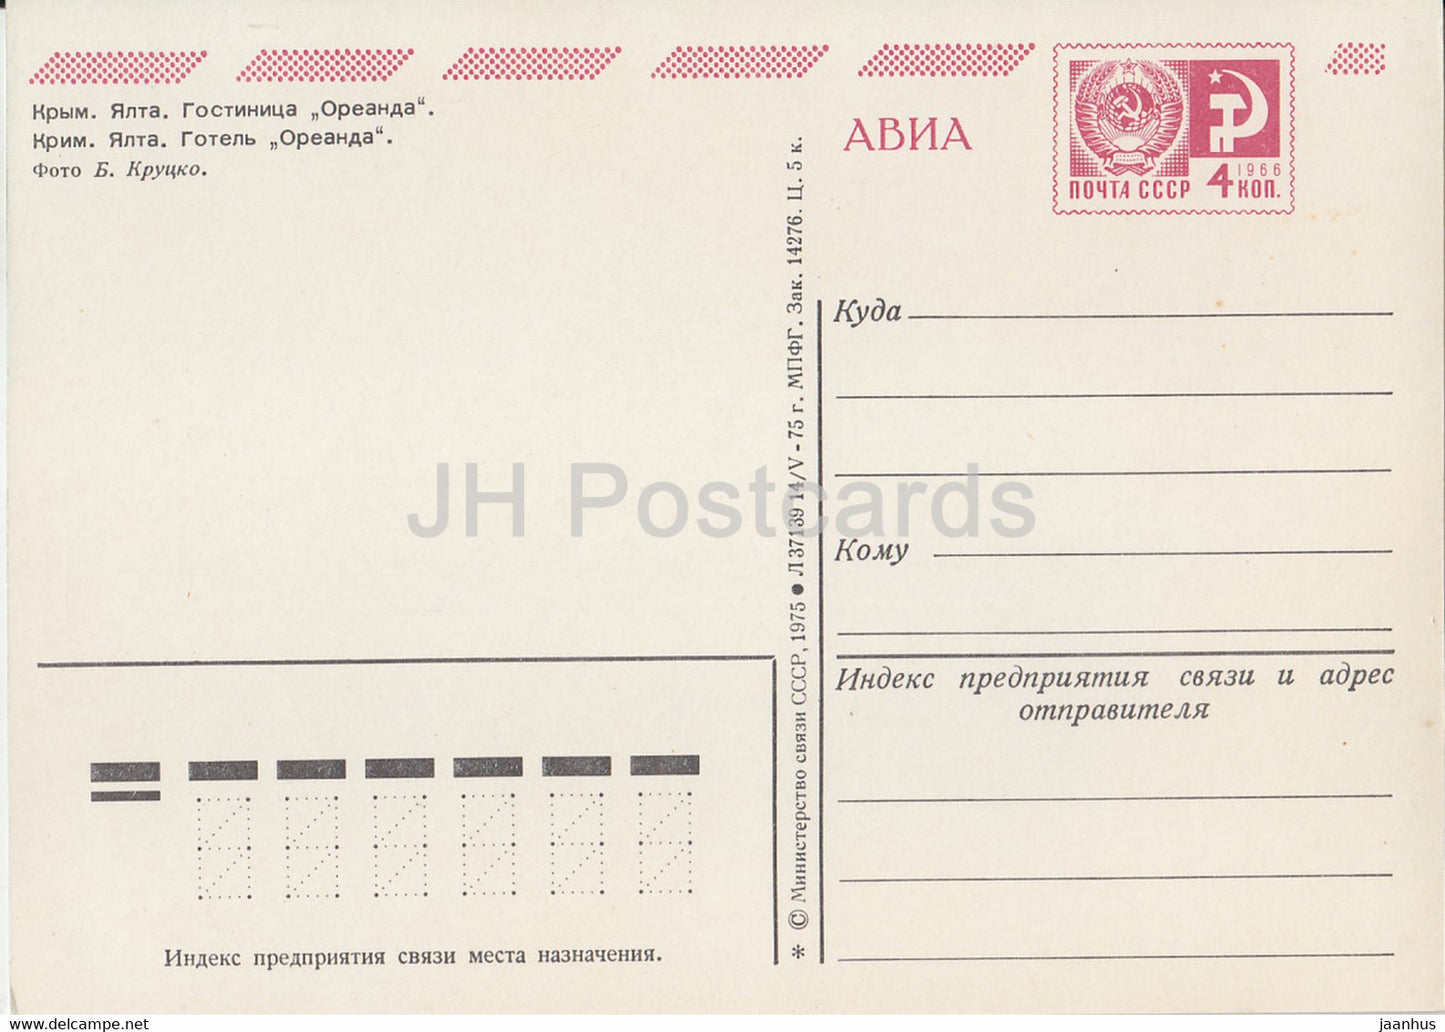 Crimée - Yalta - hôtel Oreanda - AVIA - entier postal - 1975 - Ukraine URSS - inutilisé